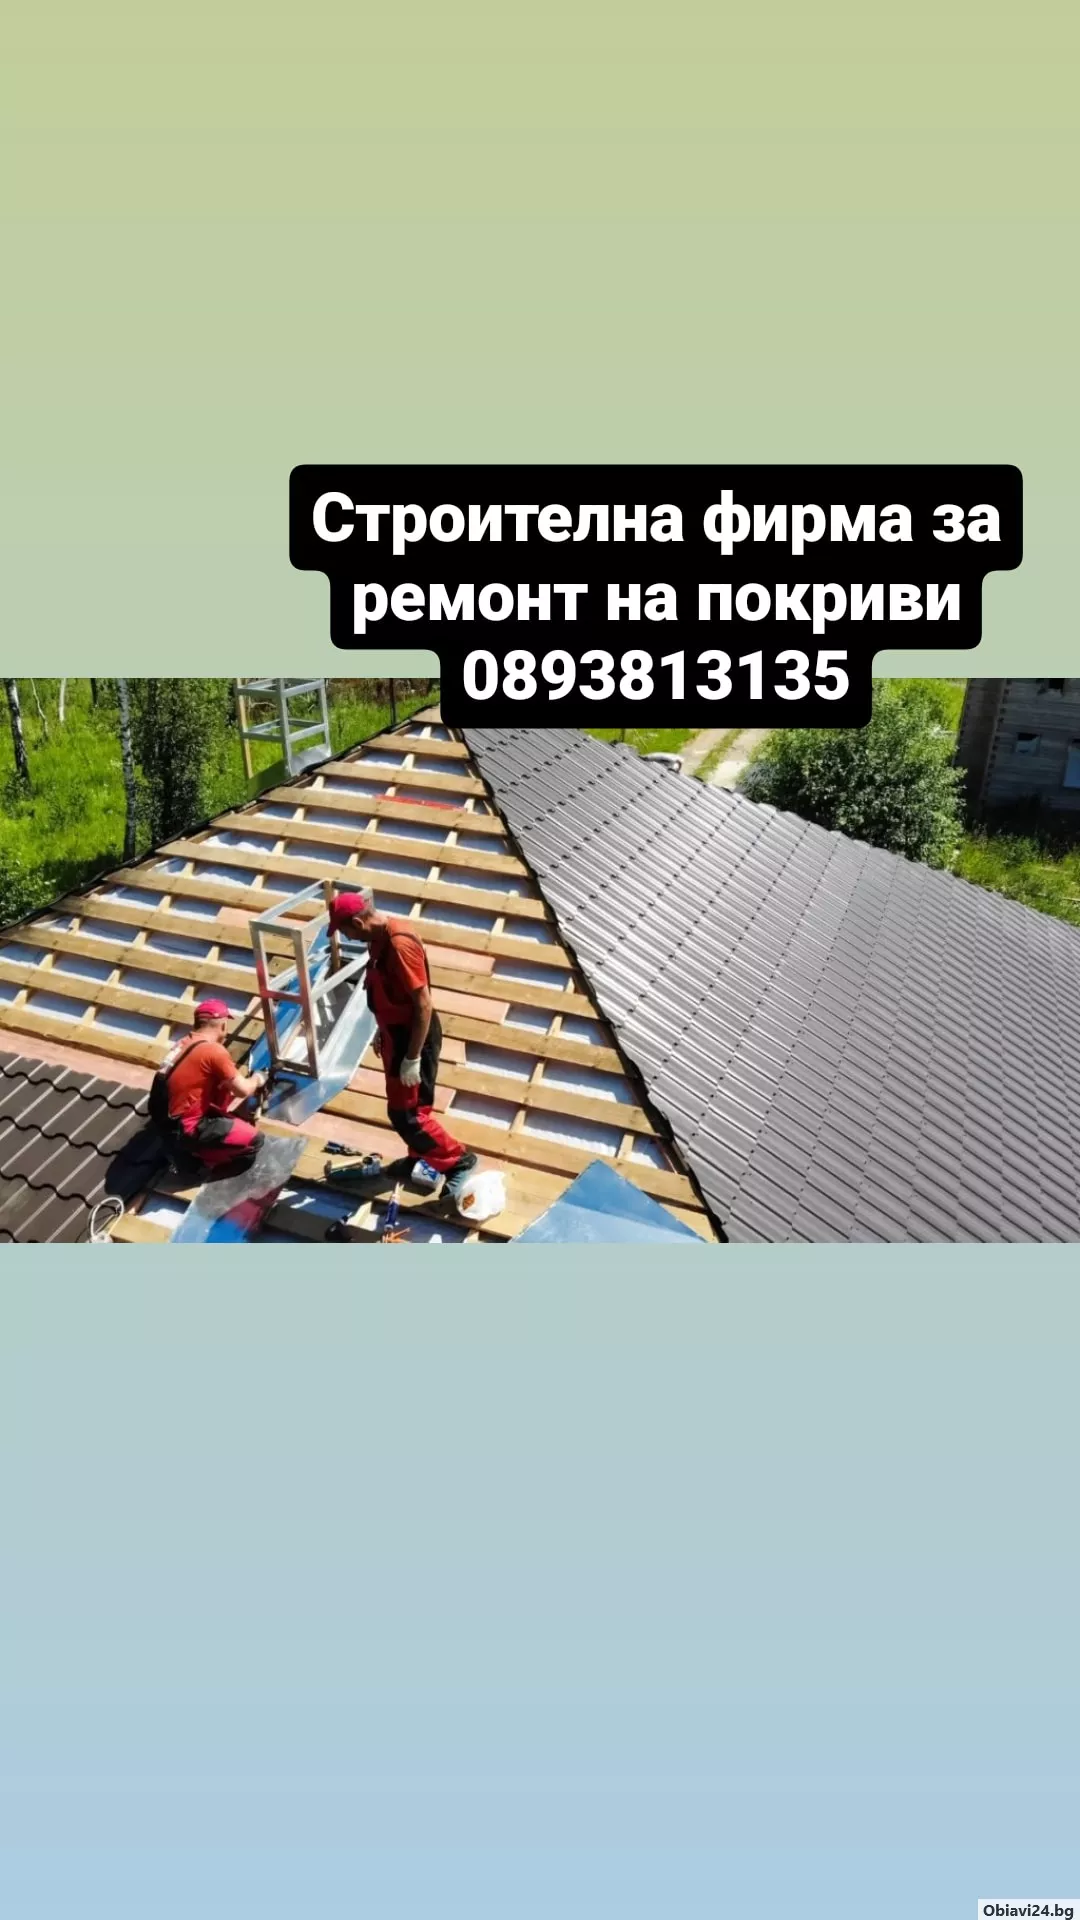 Изграждане и ремонт на покриви Гаранция за качество Тенекеджиски услуги - obiavi24.bg